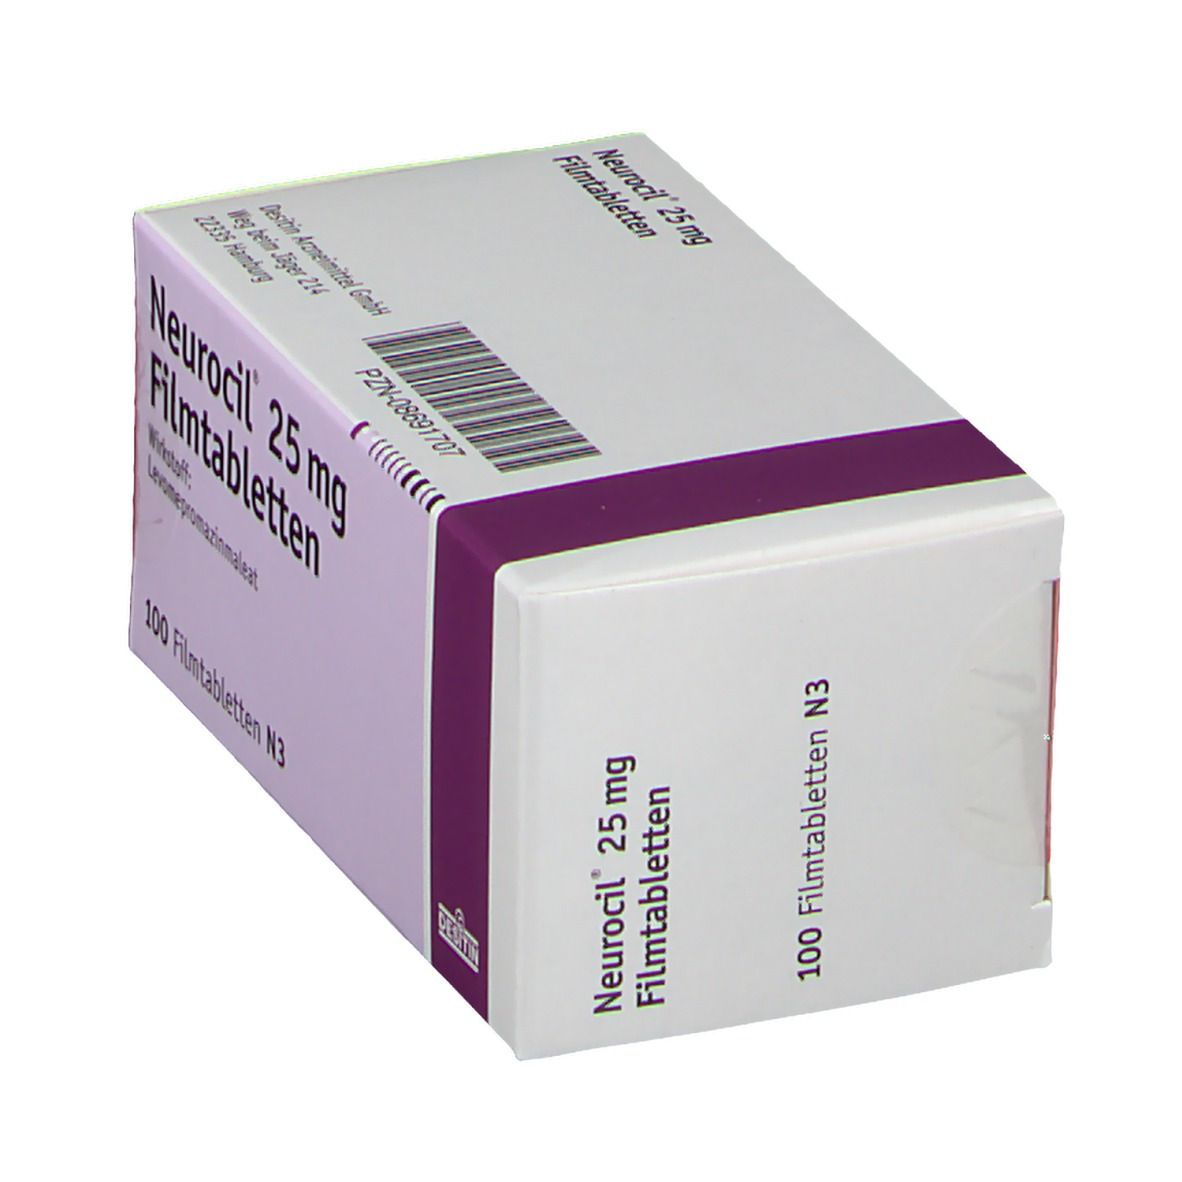 Neurocil® 25 mg